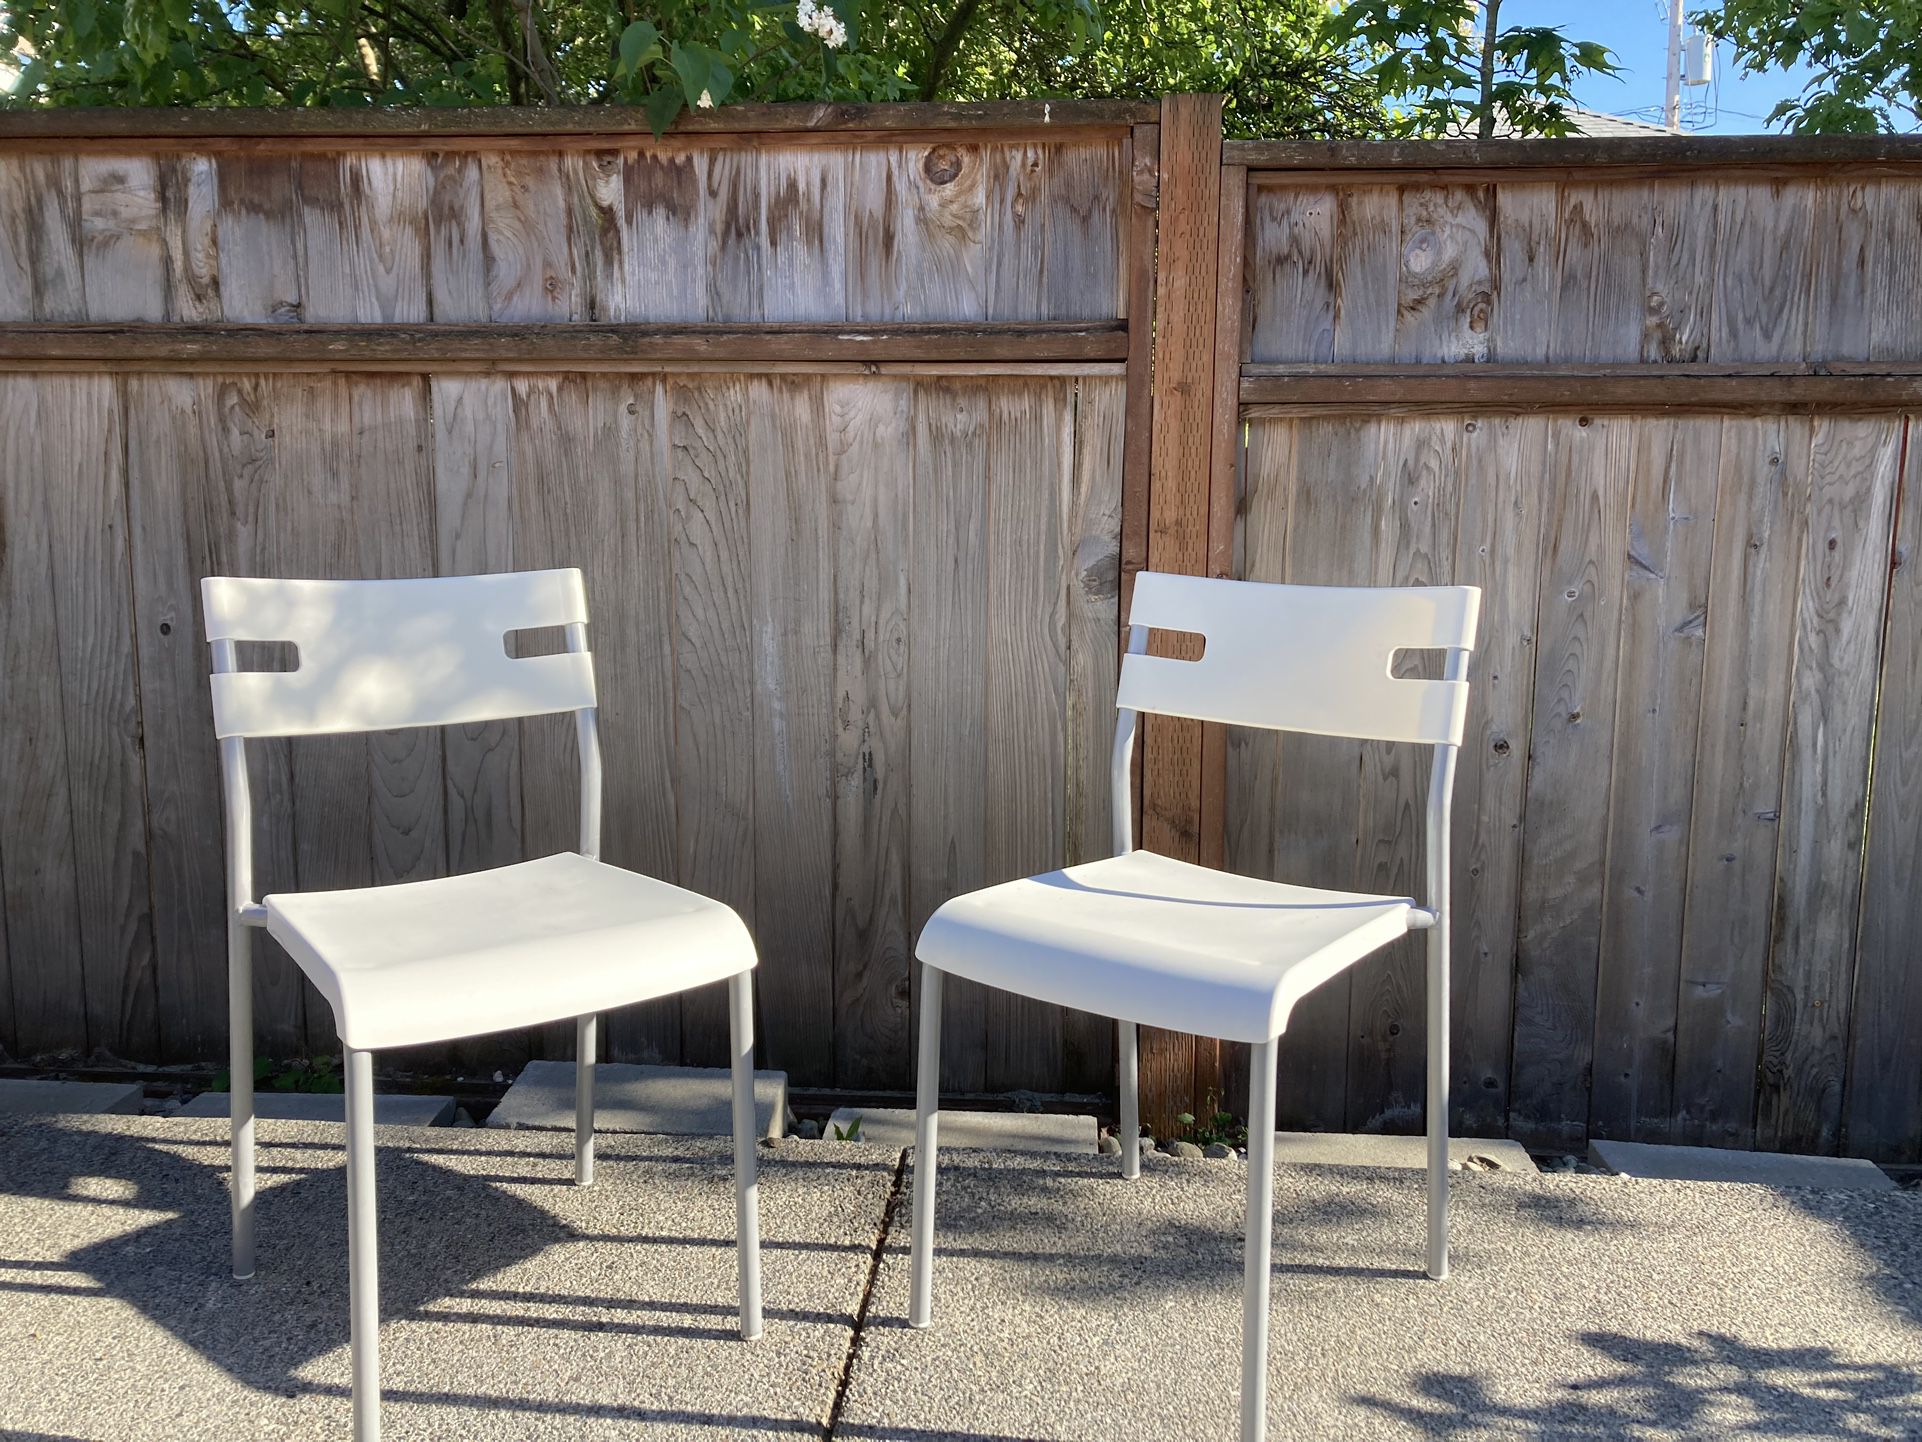 2 Chairs Indoor Or Outdoor